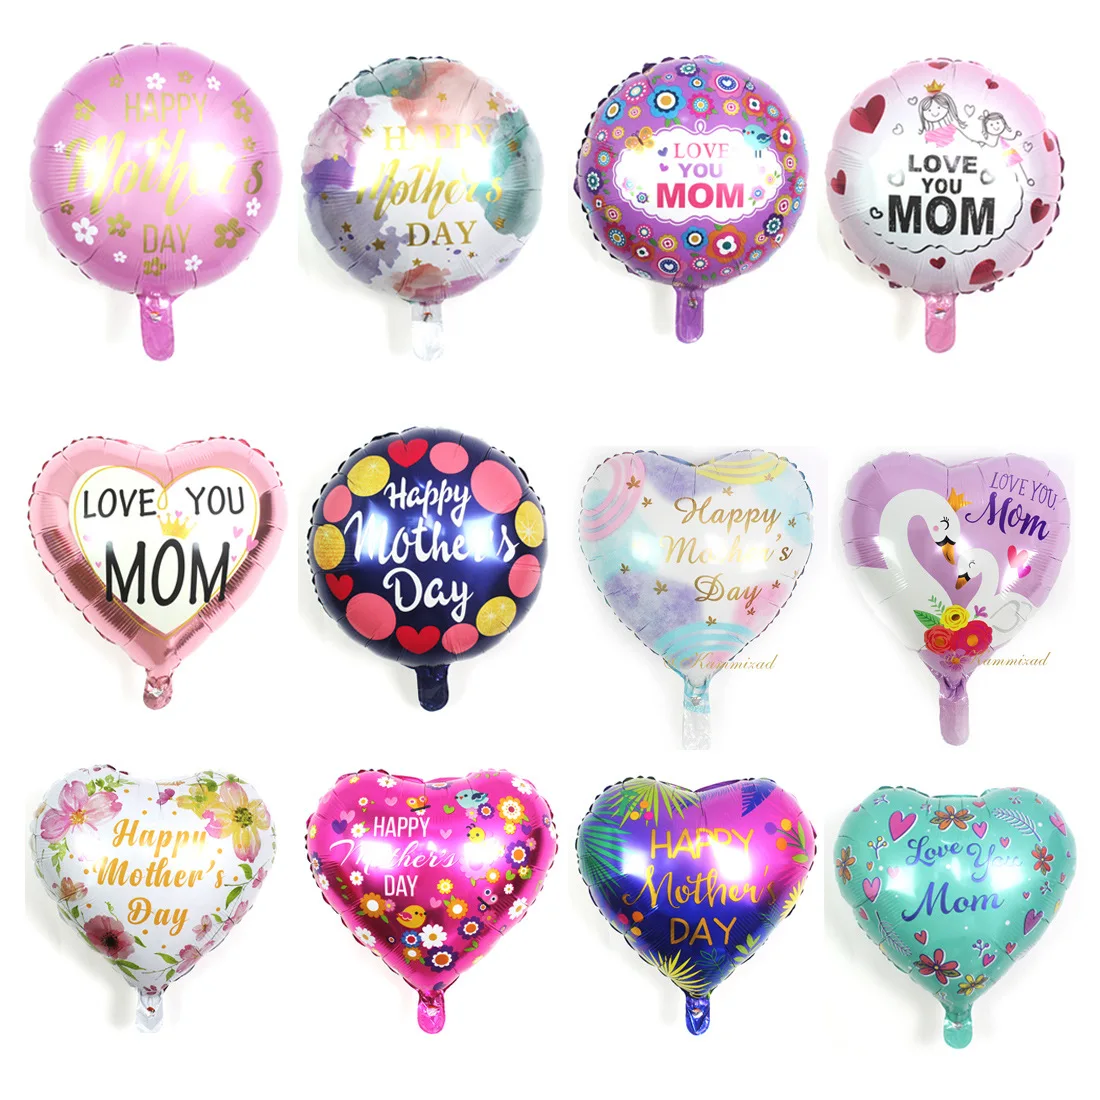 

18-дюймовый фольгированный шар на день матери, воздушные шары с надписью Love You Mom, украшение для праздника, фестиваля, вечеринки, детский Гелиевый шар для будущей мамы